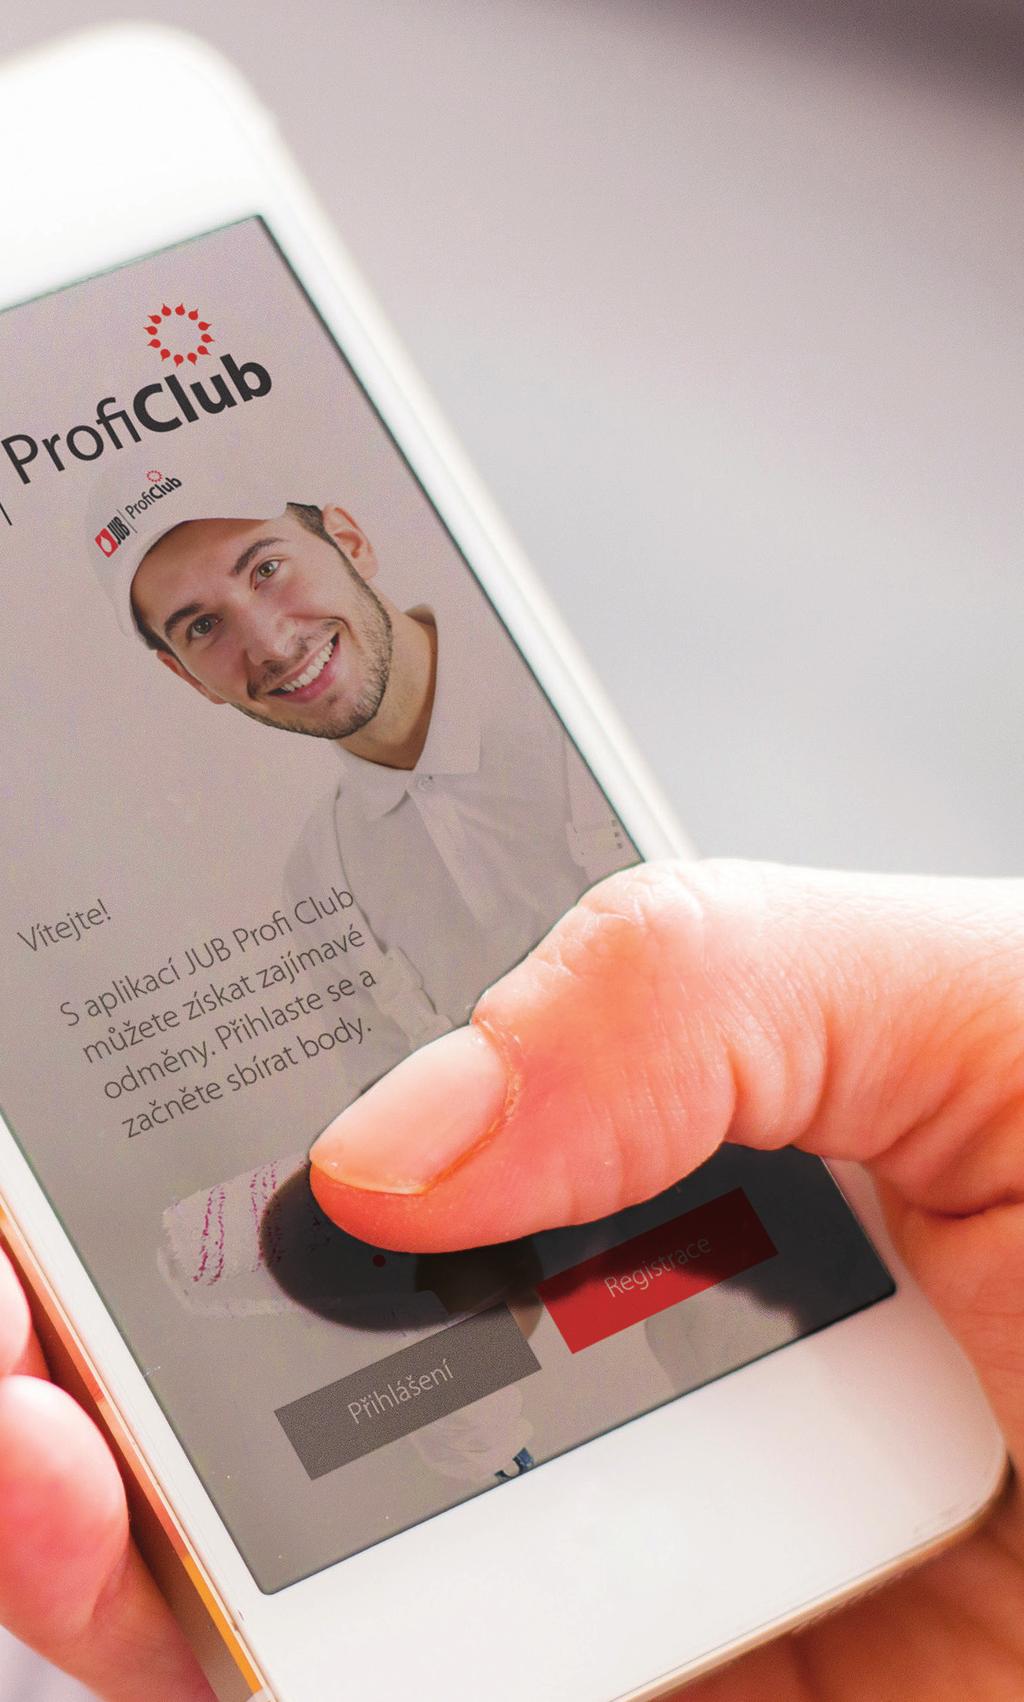 CO JE JUB PROFI CLUB A CO PŘINÁŠÍ? JUB Profi Club je bonusový program obsluhovaný stejnojmennou mobilní aplikací.